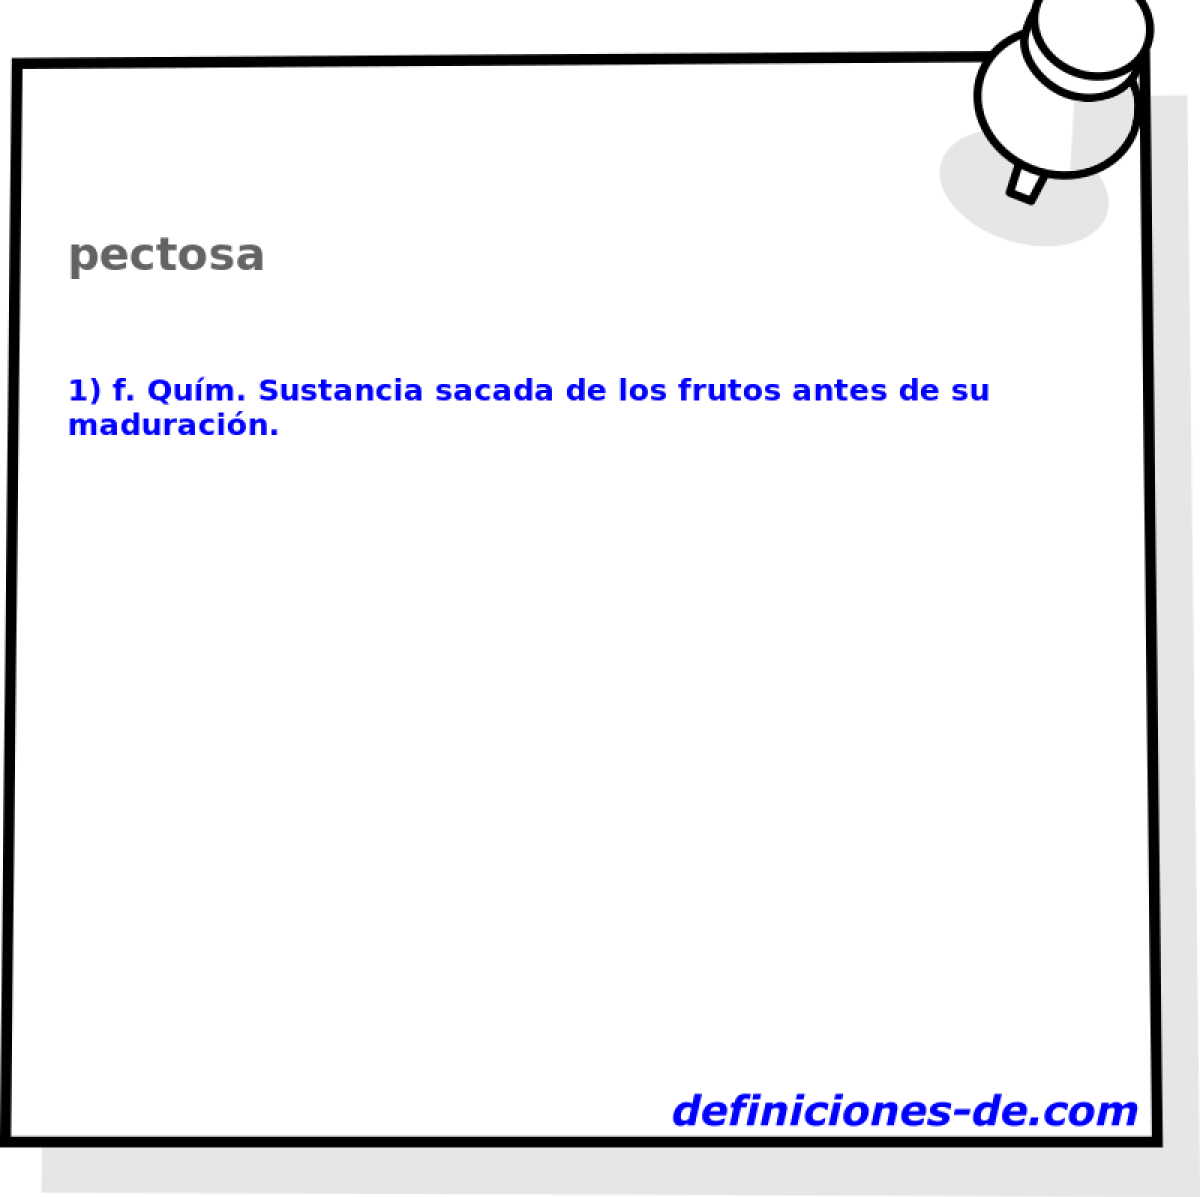 pectosa 